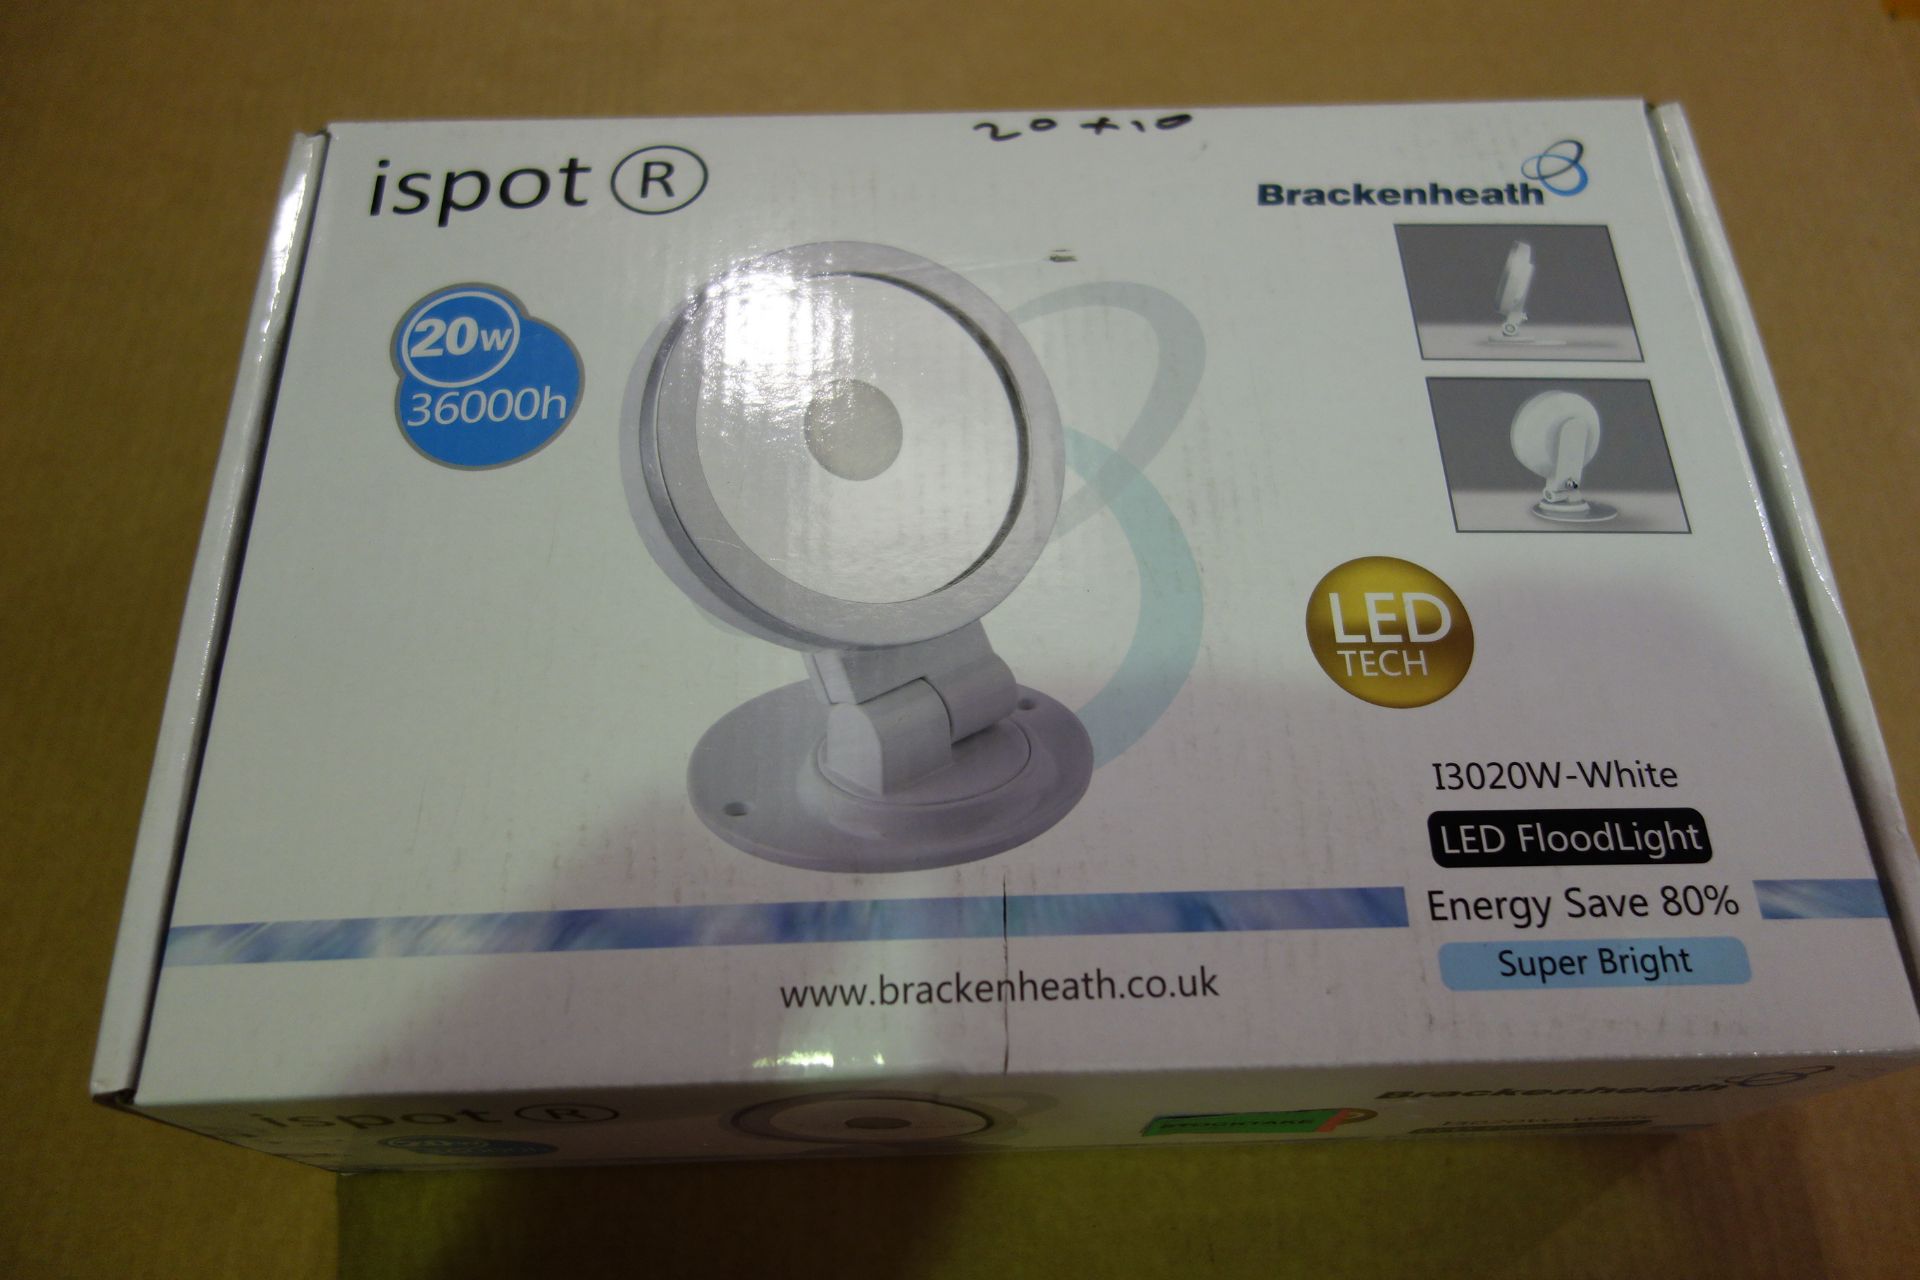 10 X Brakenheath I3020W-White 20W Ispot LED Floodlight Super Bright